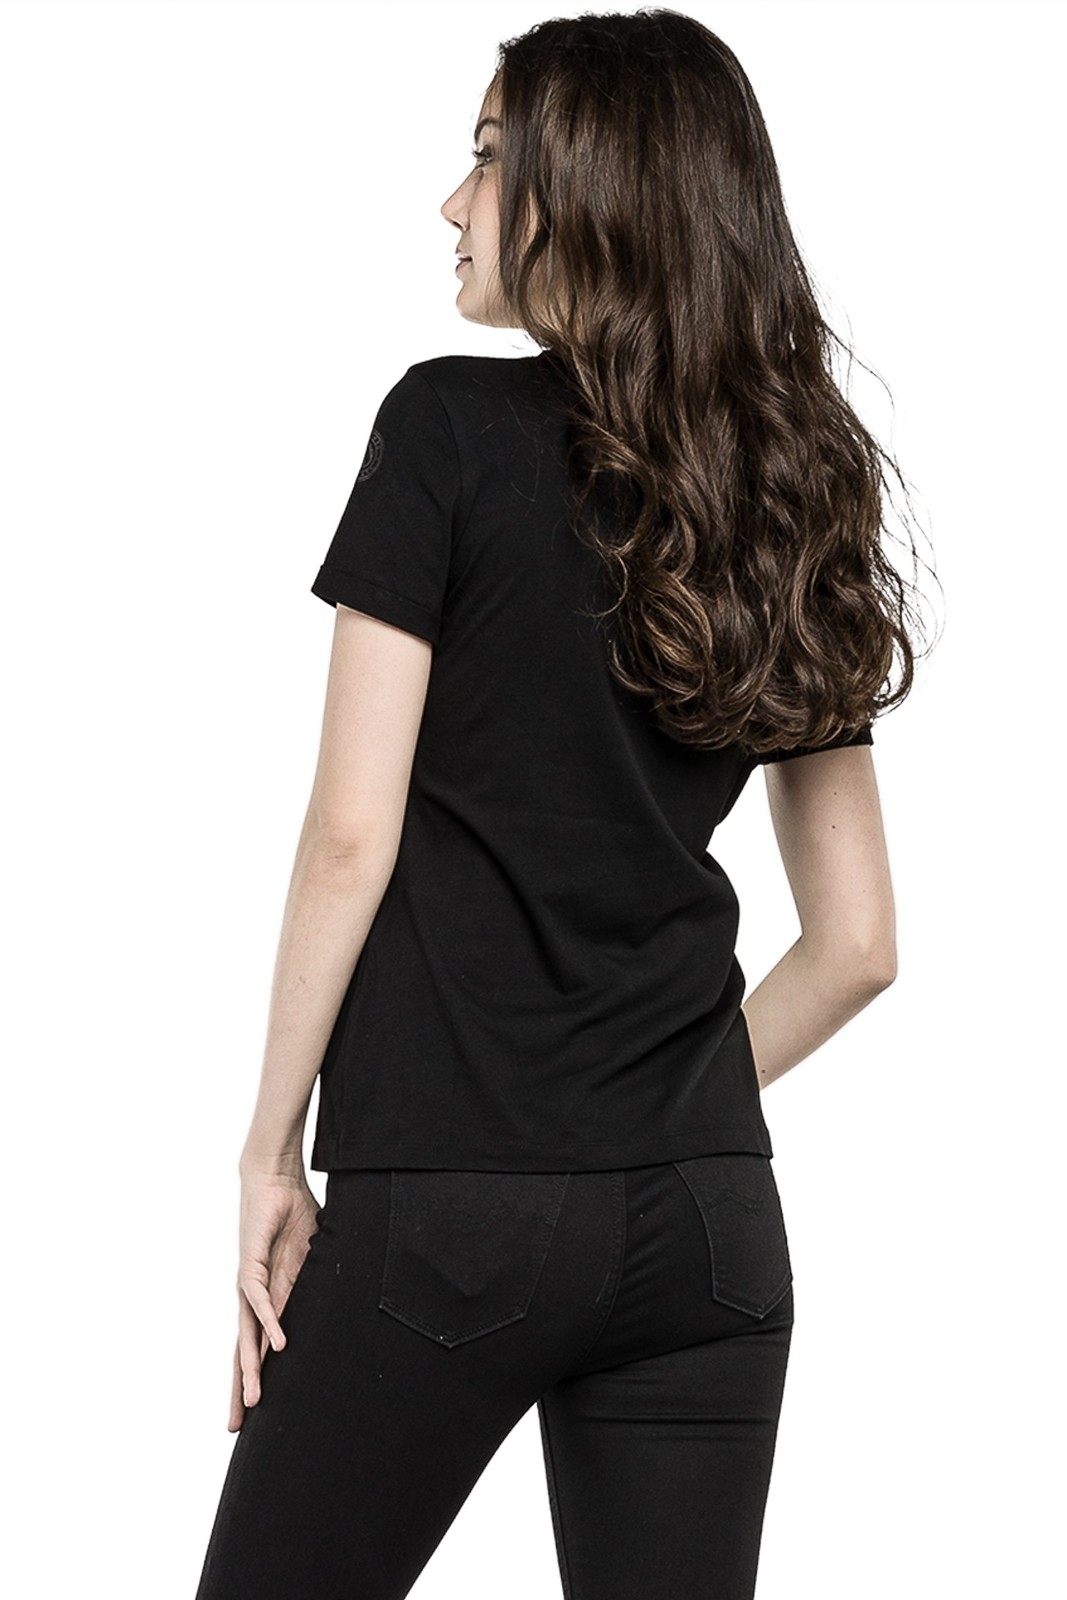 Replay márkás női fekete T-shirt 2015.02.28 fotója